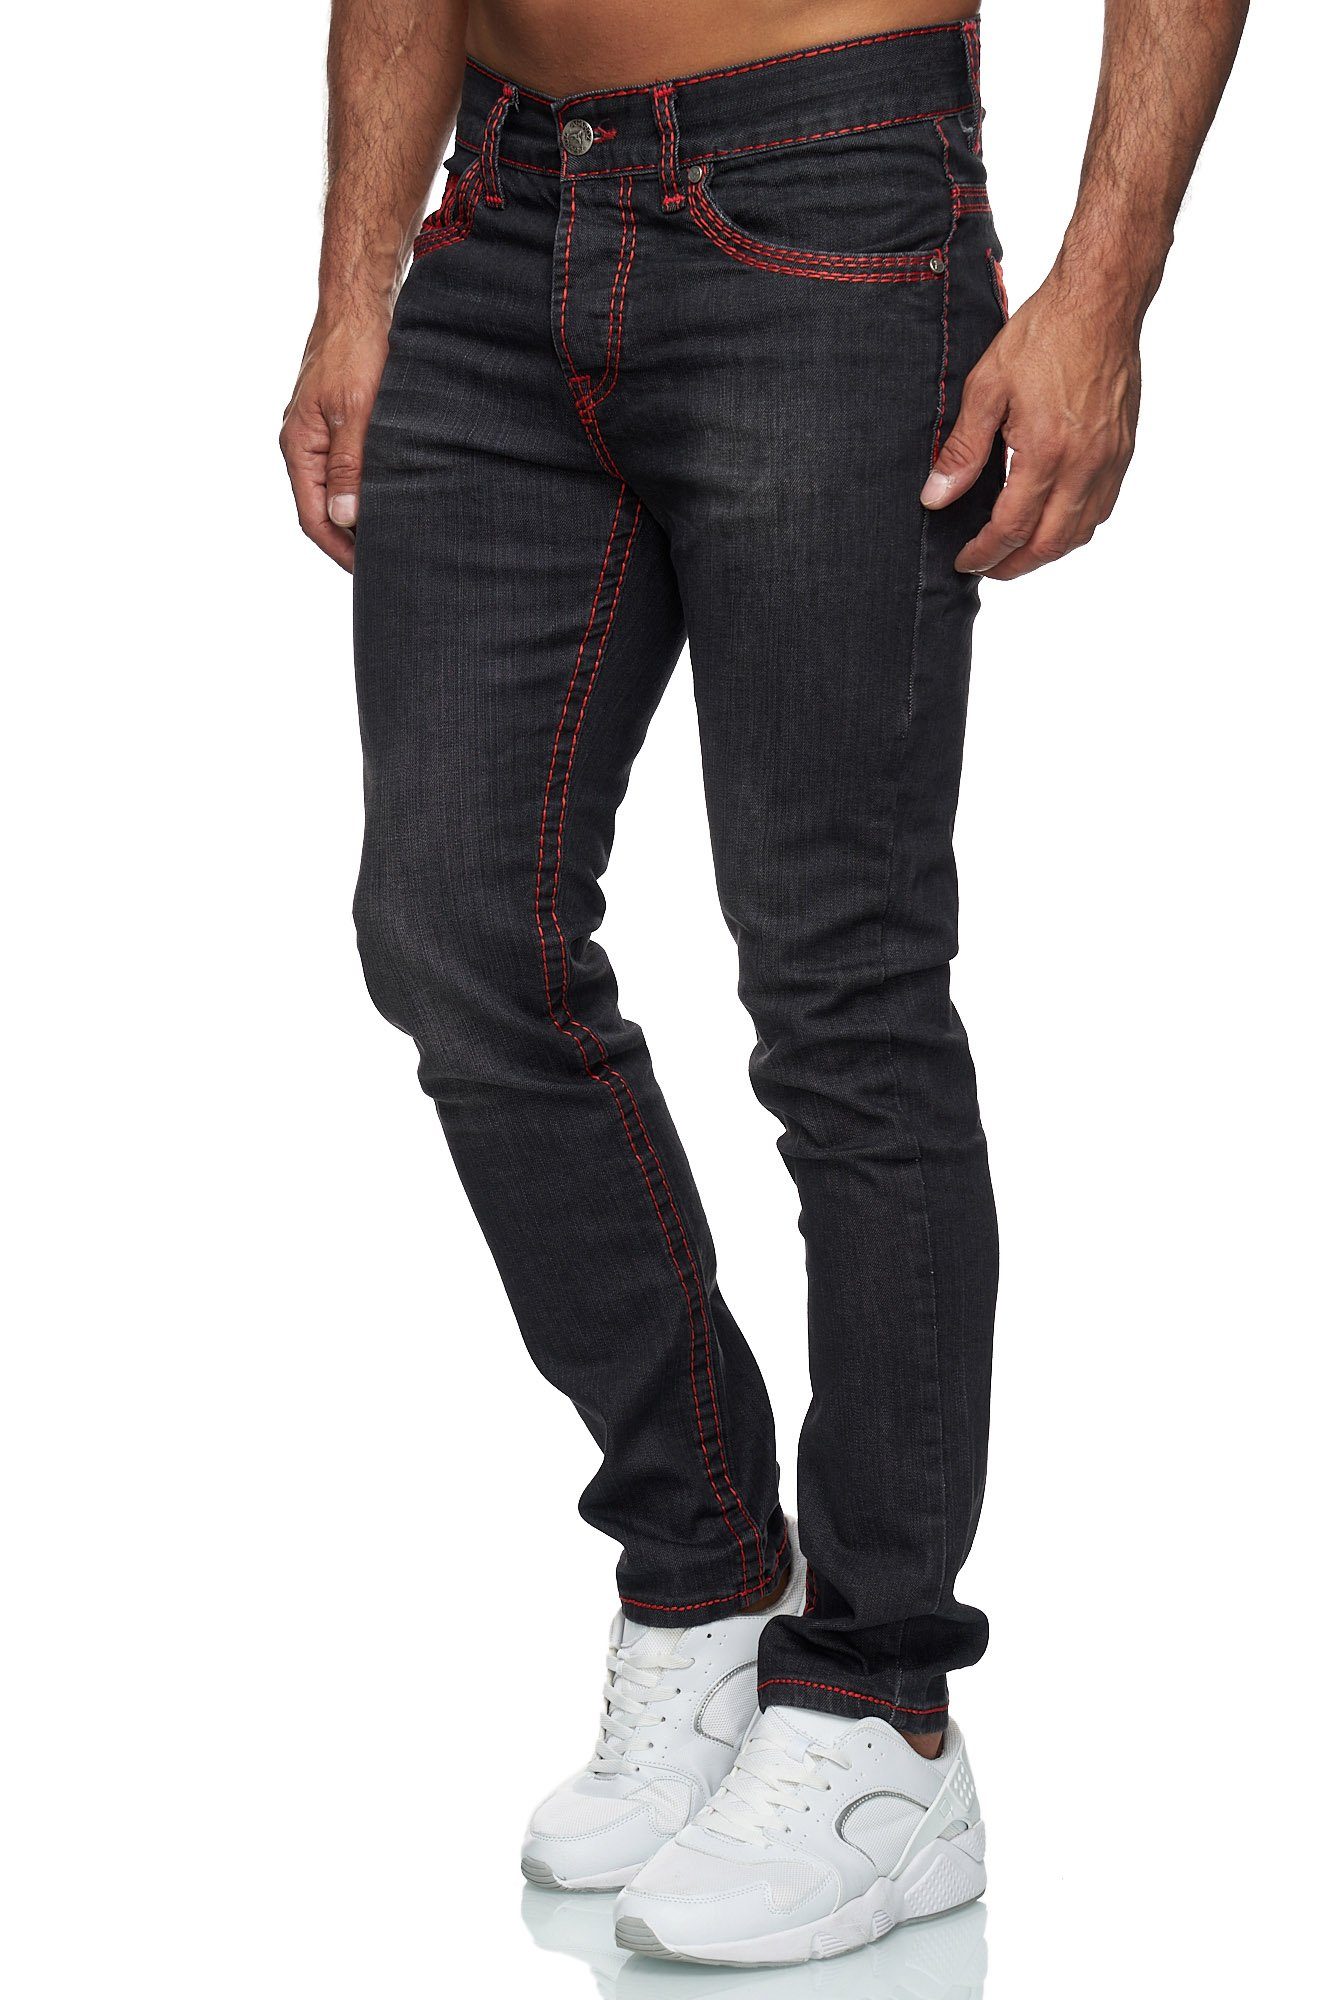 Baxboy Regular-fit-Jeans Herren Neon-Naht Stretch Straight 9574 Denim Fit Dicke Jeans Schwarz_Rot Stonewashed